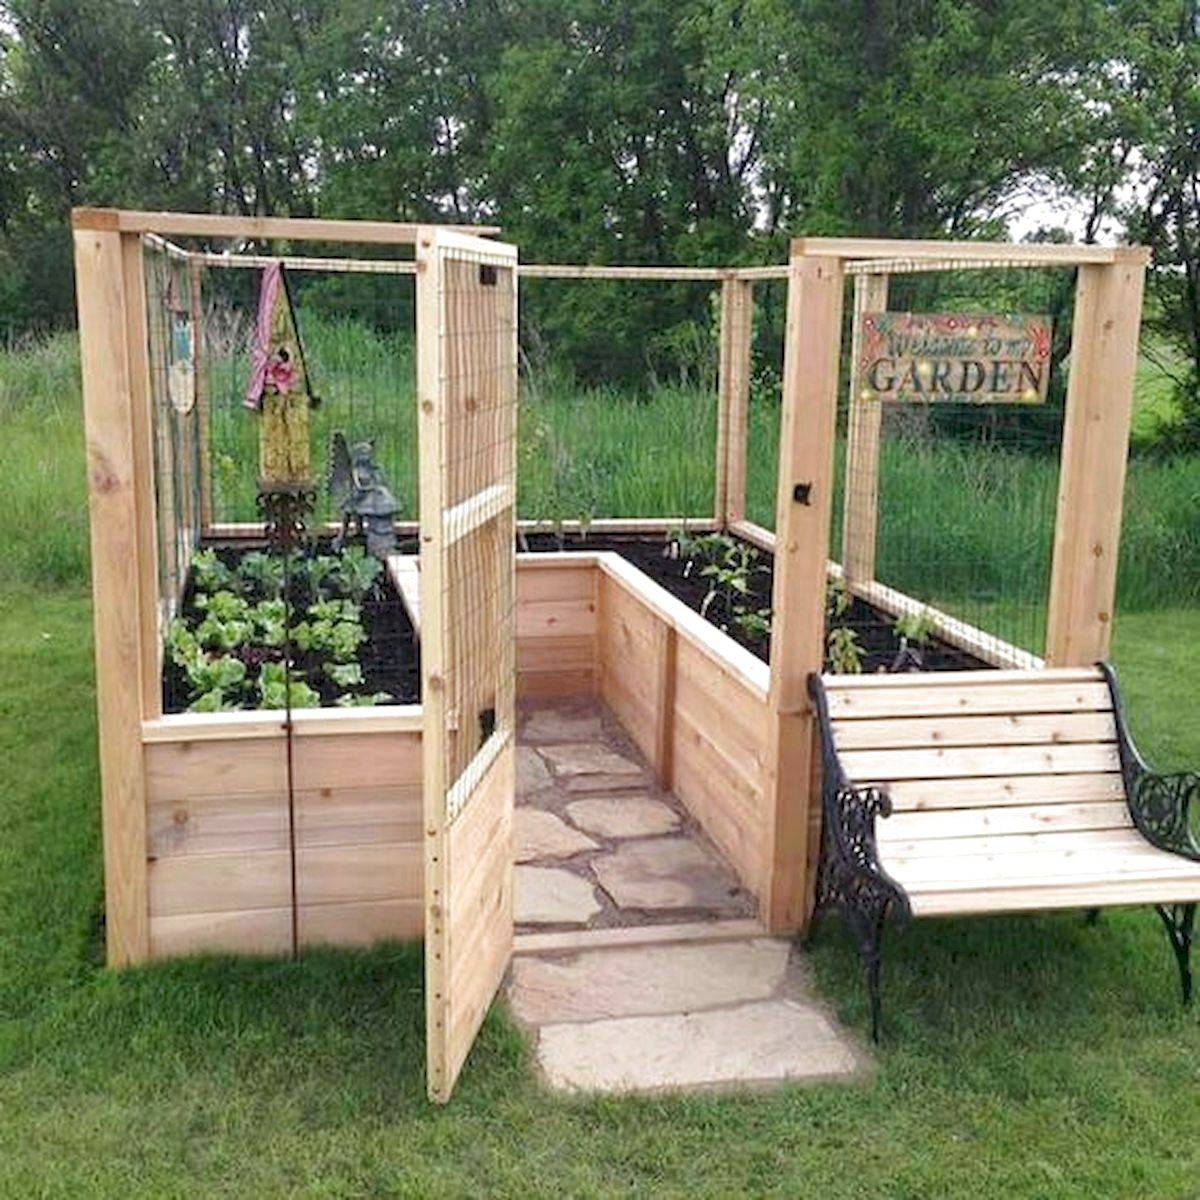 Unique Raised Bed Garden Design Ideas